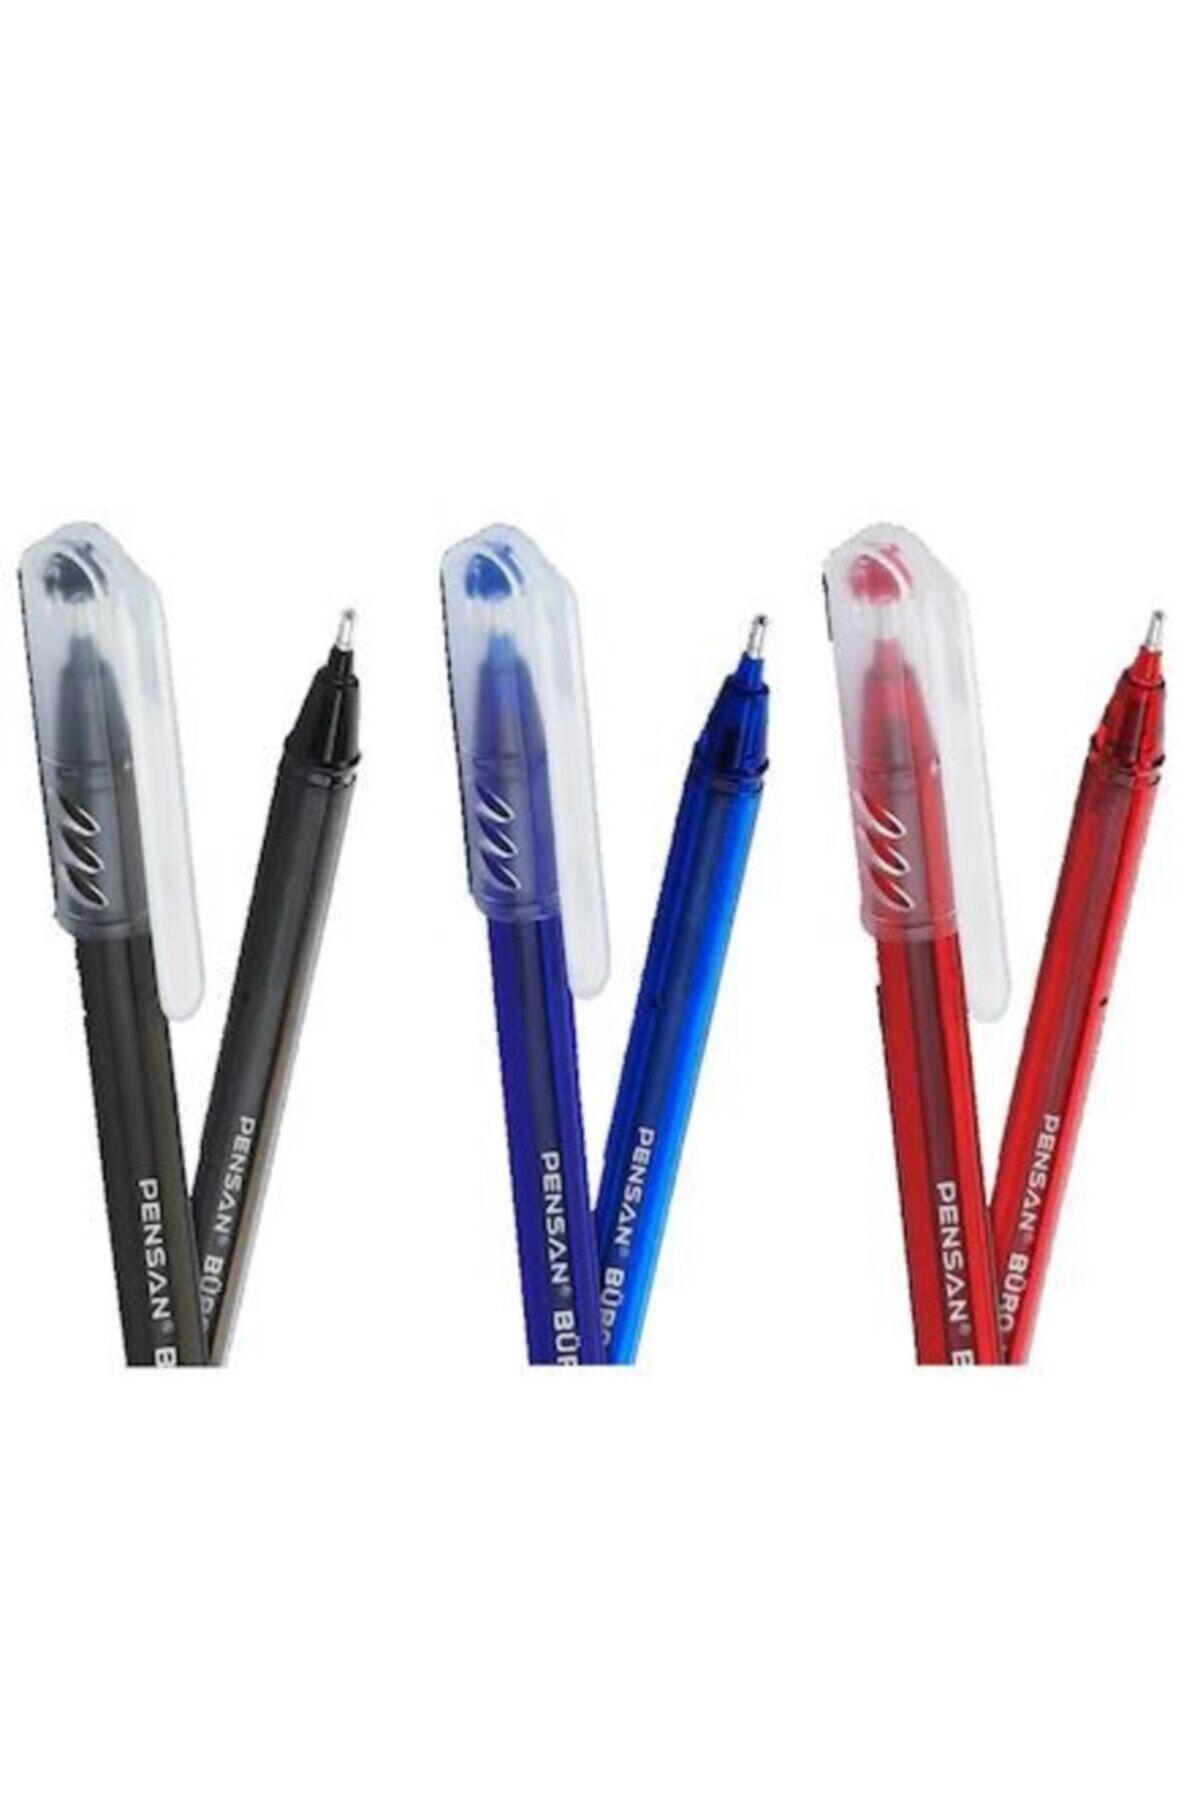 Pensan Büro 1.0mm Tükenmez Kalem 4 Mavi 4 Kırmızı 2 Siyah